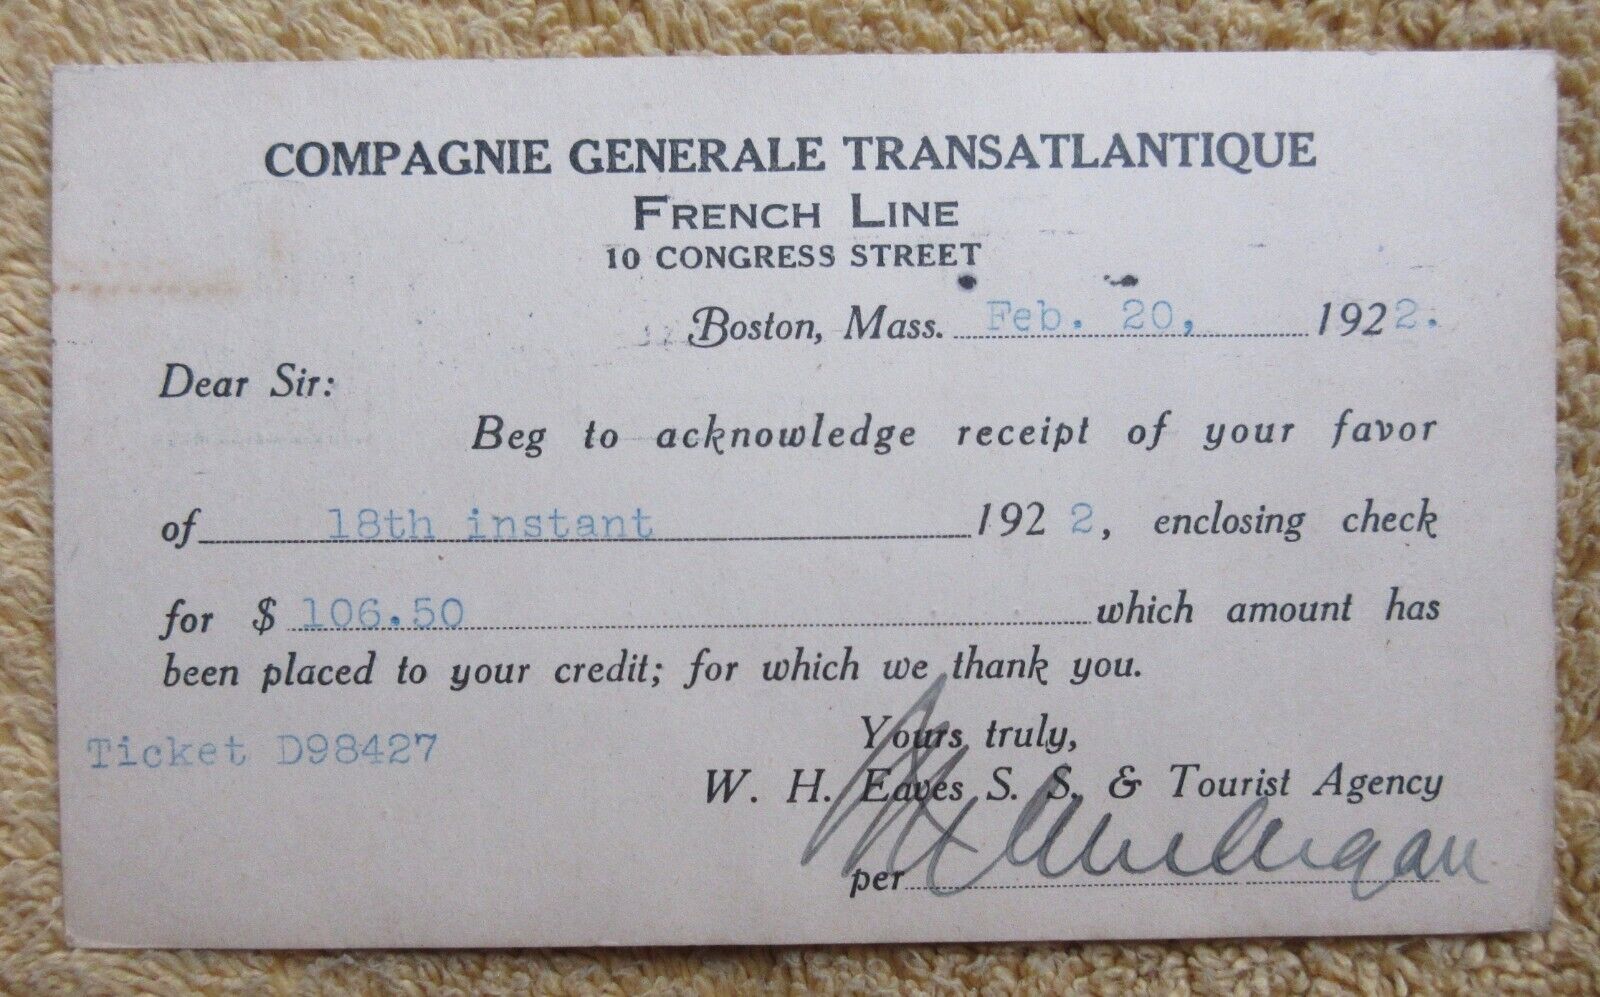 1922 COMPAGNIE GENERALE TRANSATLANTIQUE  FRENCH LINE RECEIPT NOTICE POSTCARD